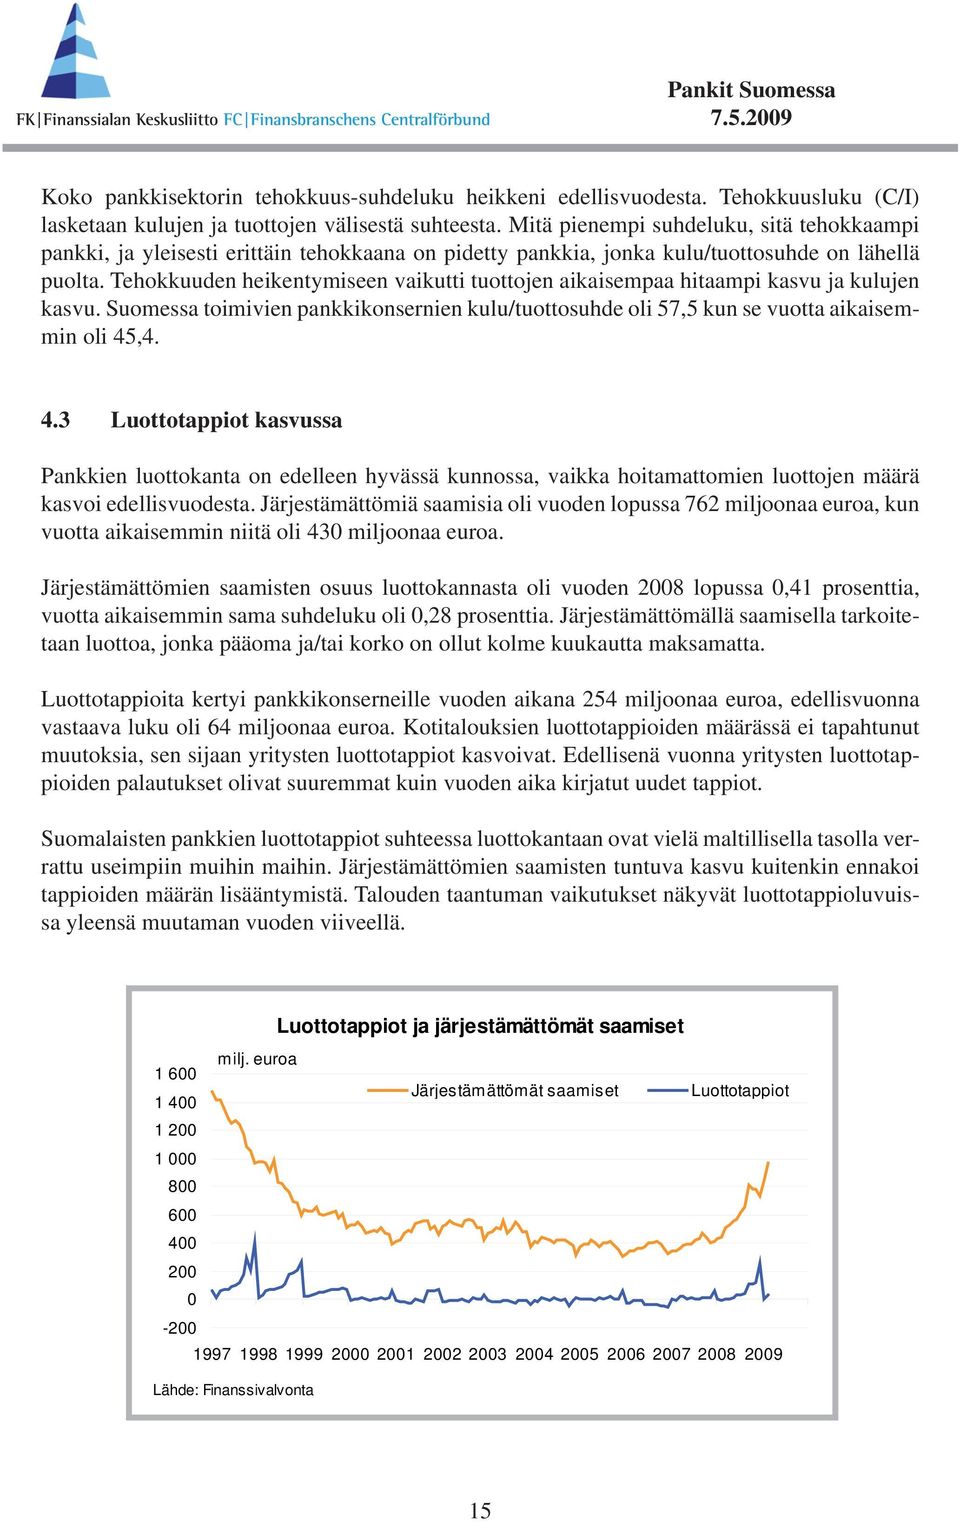 Tehokkuuden heikentymiseen vaikutti tuottojen aikaisempaa hitaampi kasvu ja kulujen kasvu. Suomessa toimivien pankkikonsernien kulu/tuottosuhde oli 57,5 kun se vuotta aikaisemmin oli 45